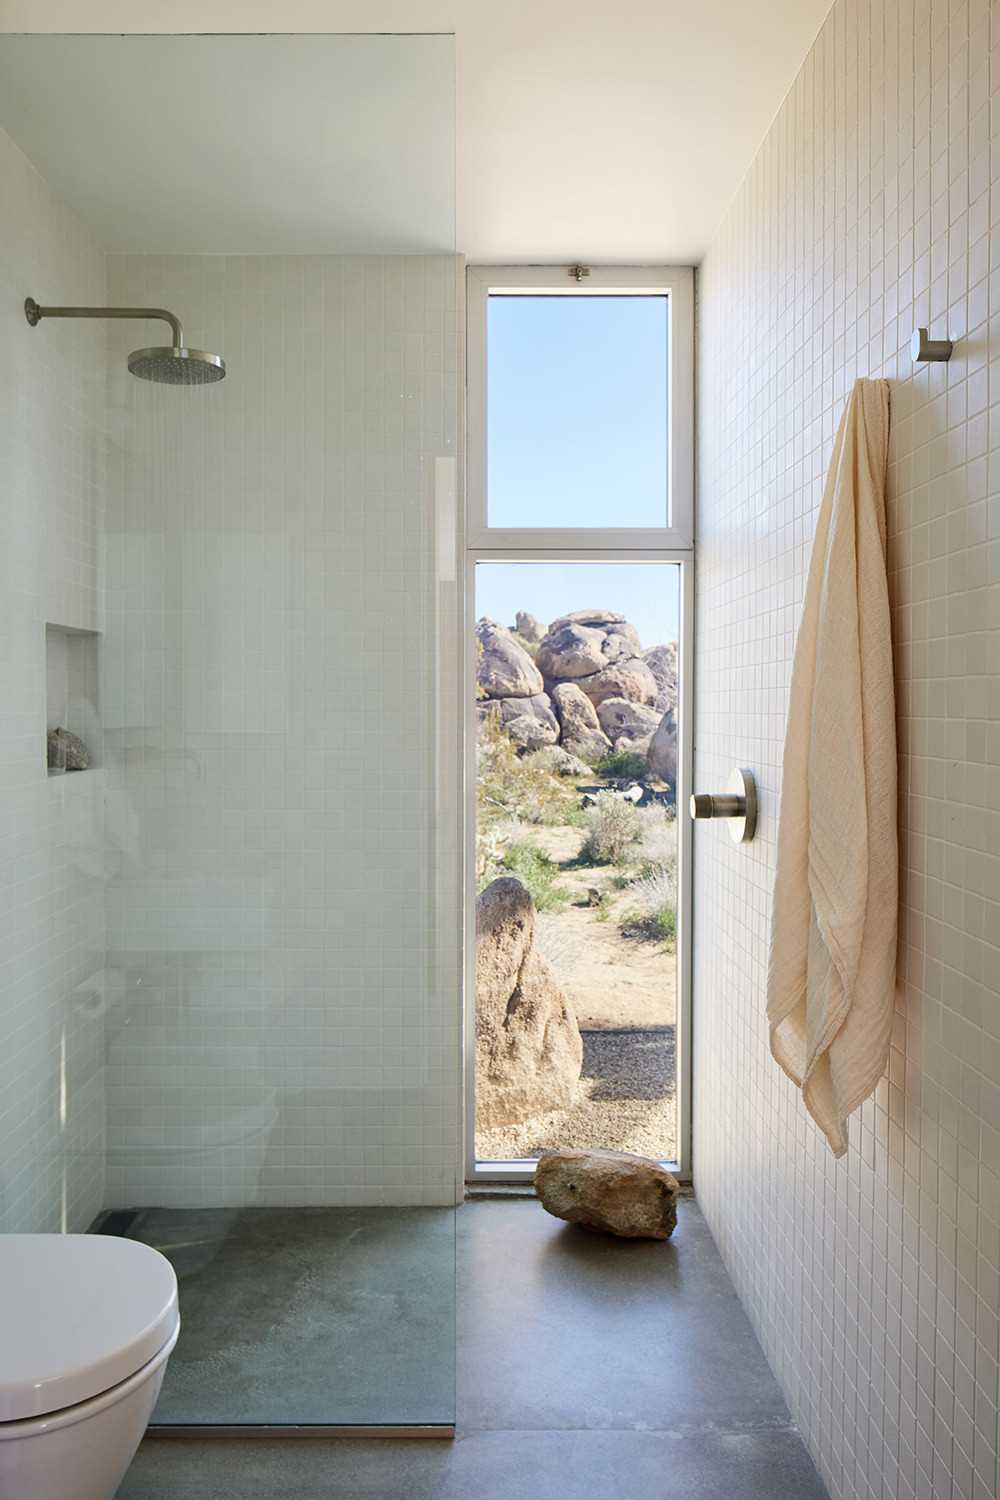 În baie, gresia acoperă pereții, în timp ce o fereastră verticală înaltă încadrează perfect priveliștea.